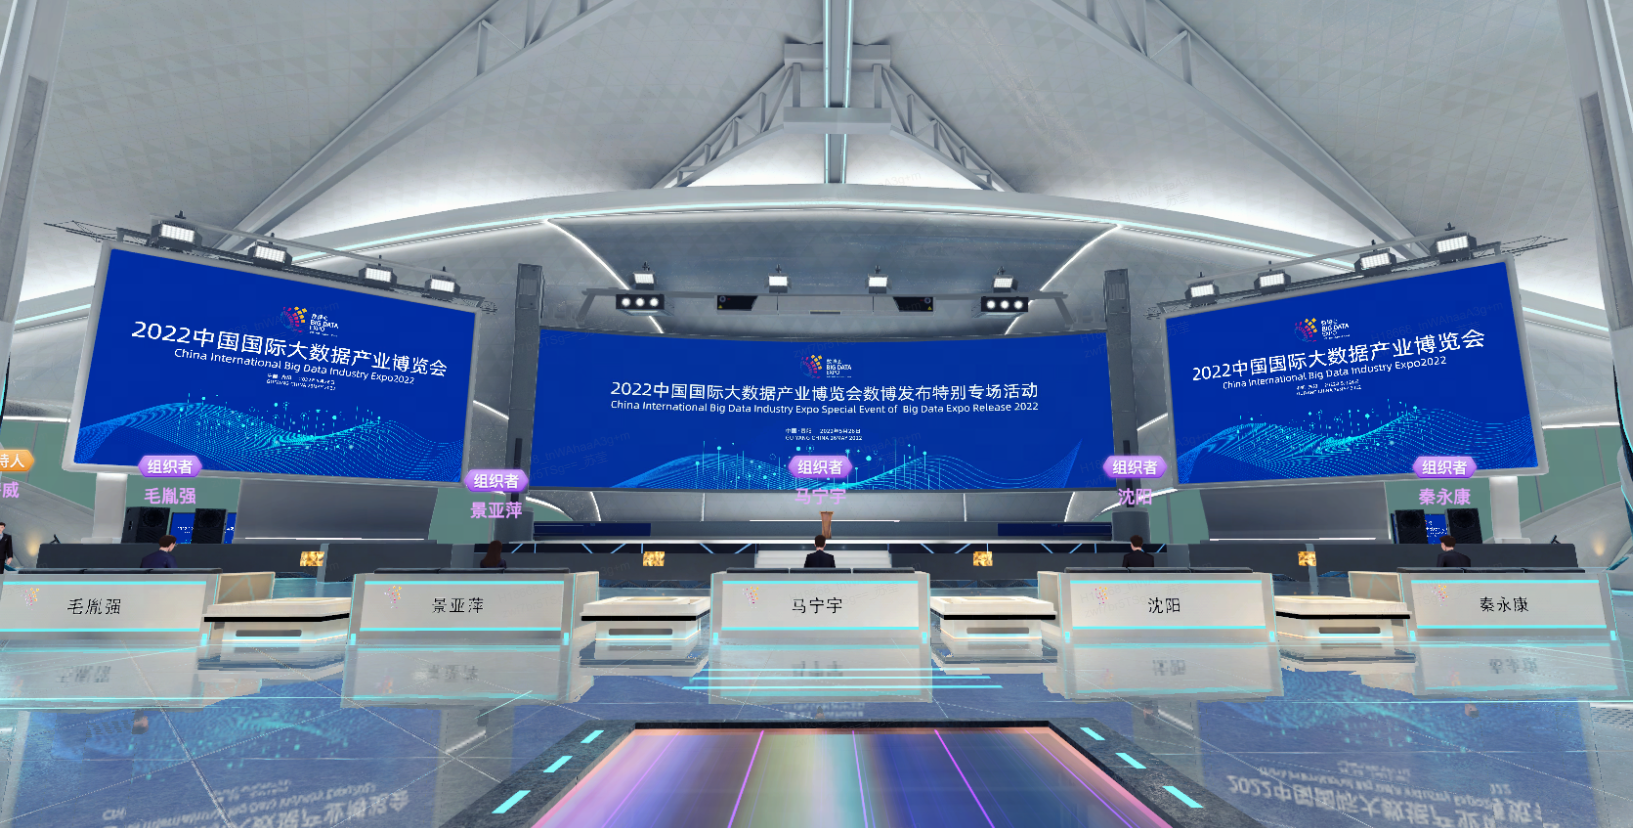 图片展示了一个现代化的室内场所，设有接待台和大屏幕，上面显示着2022年中国国际进口博览会的信息。